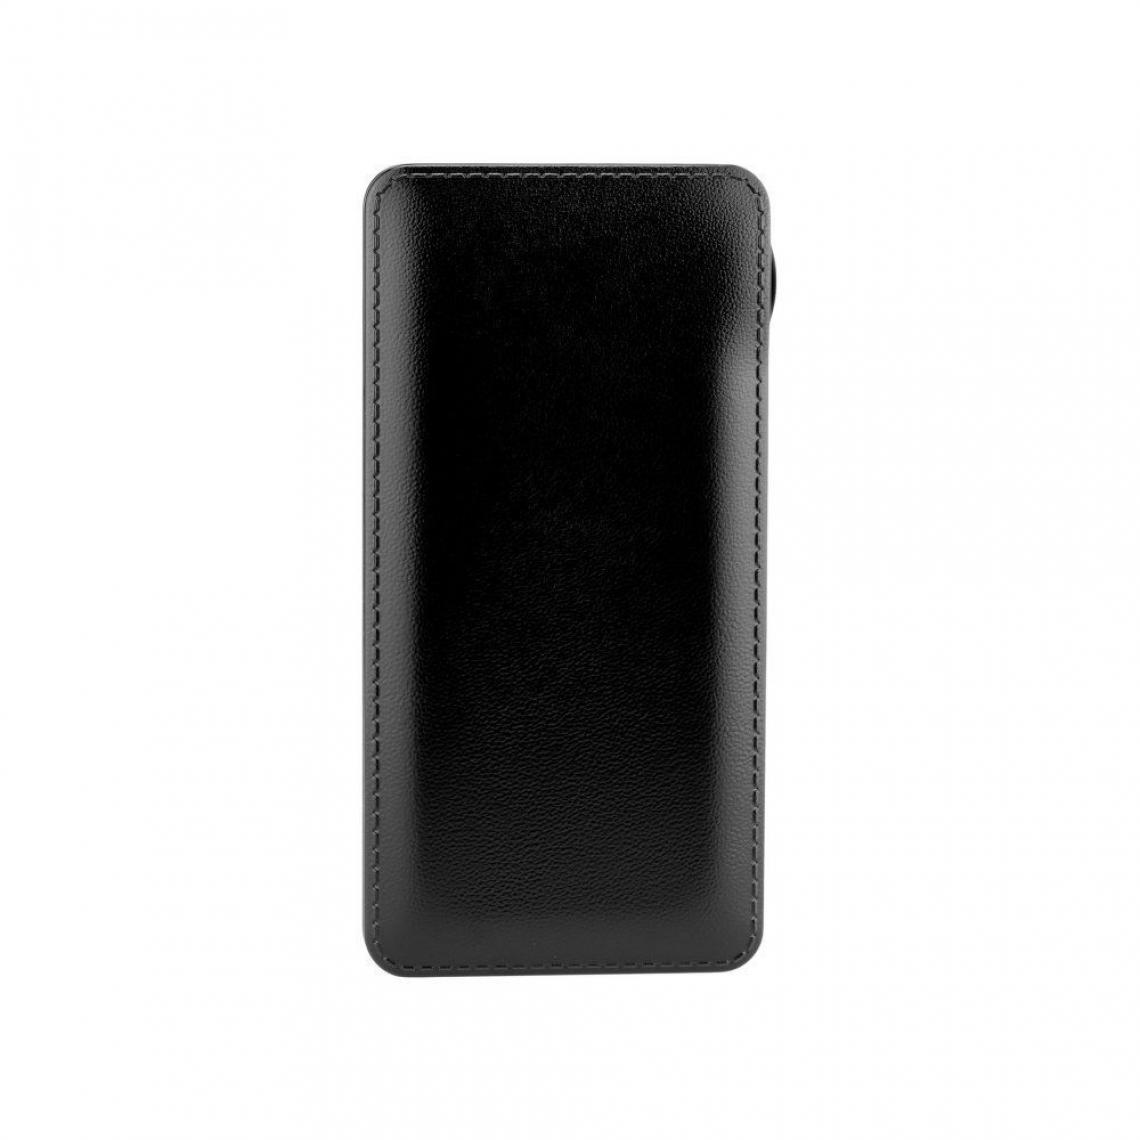 Ozzzo - Chargeur batterie externe 30000 mAh powerbank ozzzo noir pour Cubot King Kong Mini - Autres accessoires smartphone